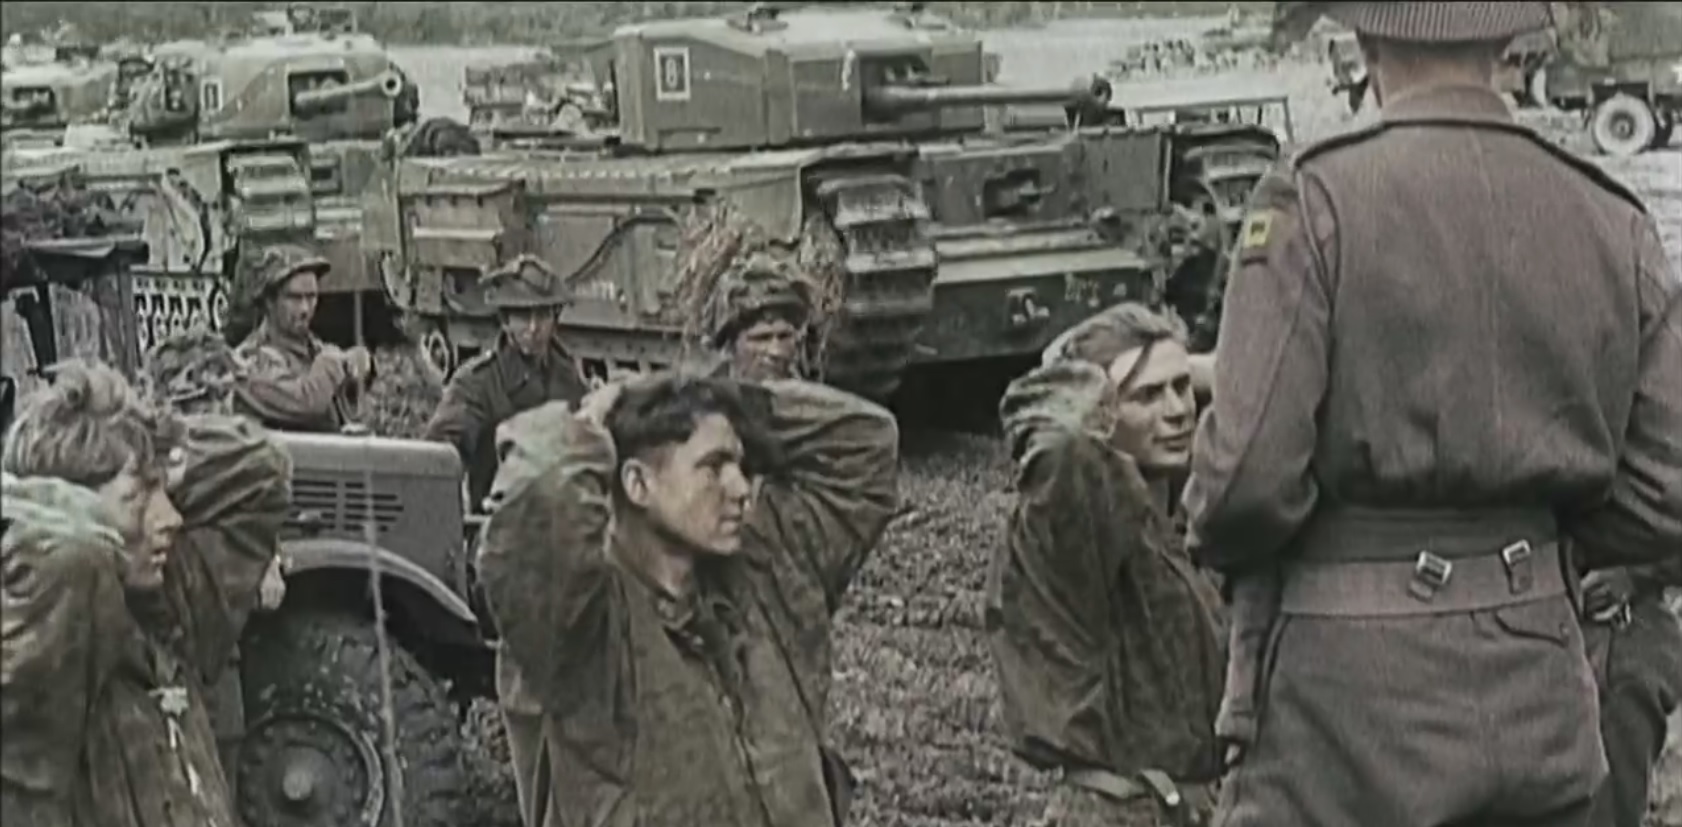 German soldiers being taken as prisoners of war.